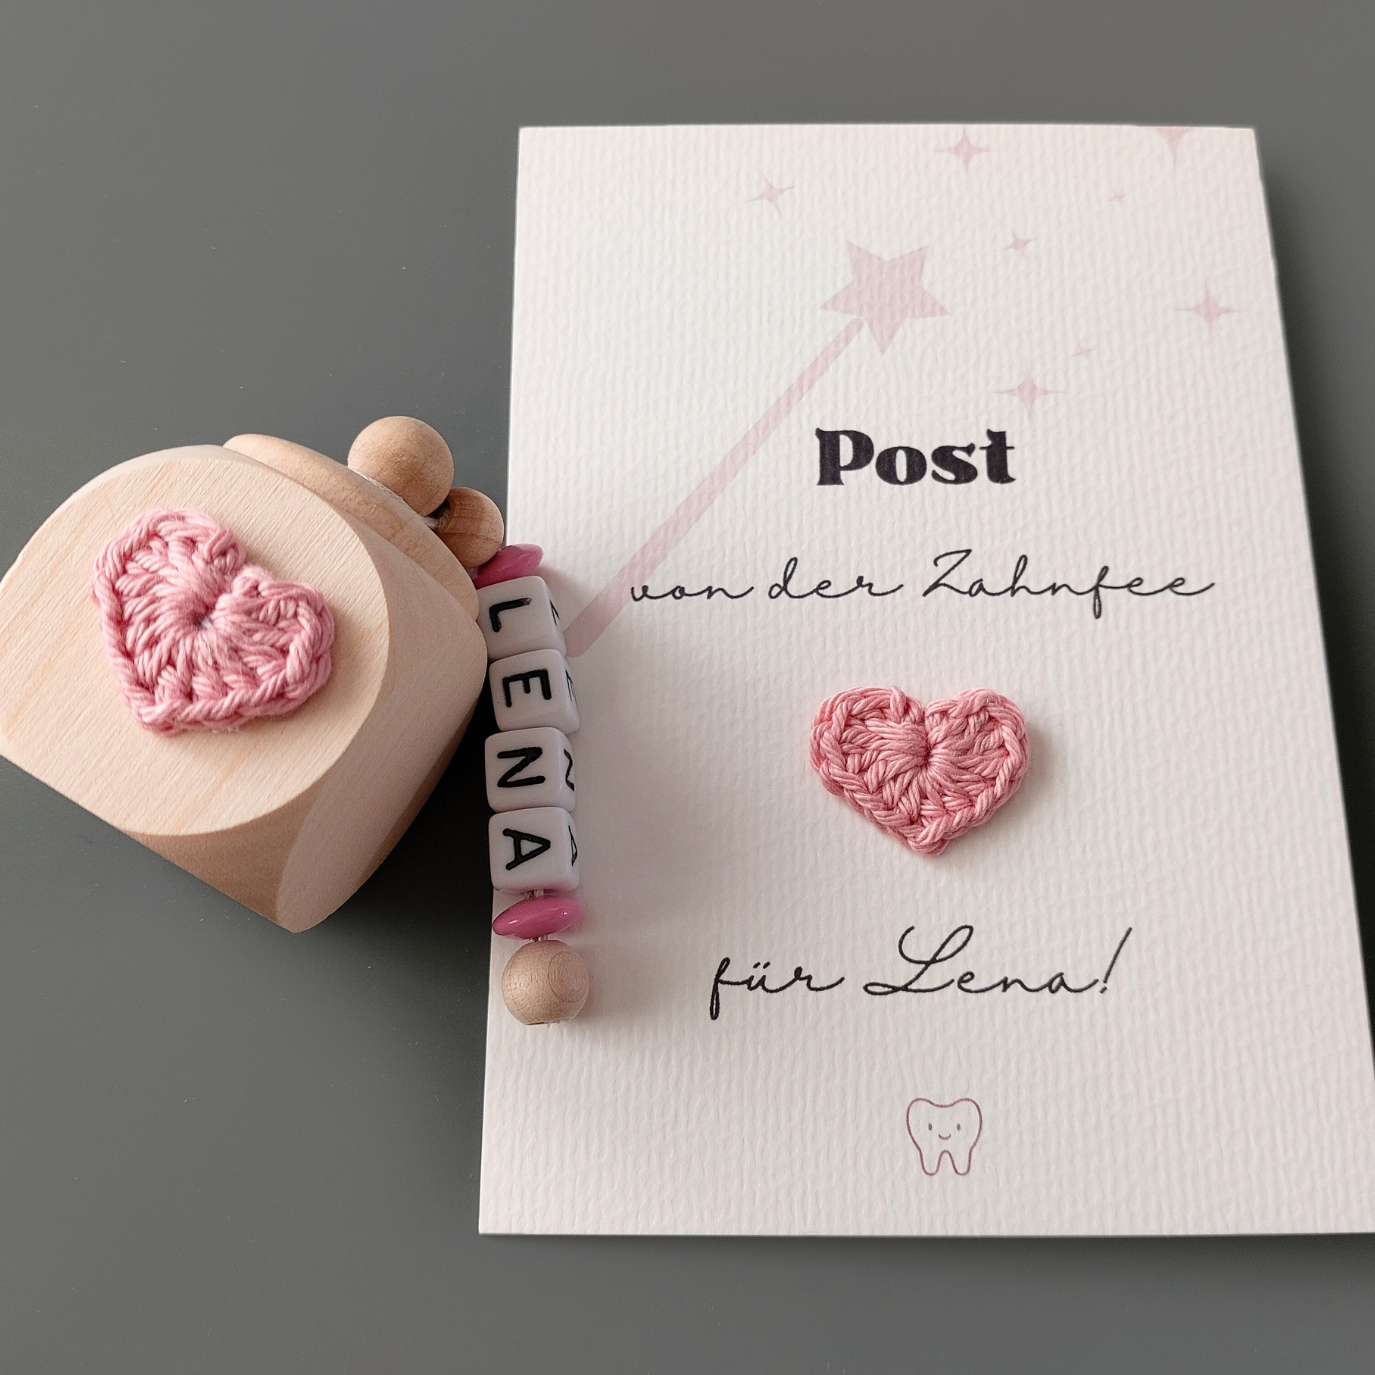 Persönliche Post von der Zahnfee und Milchzahndose - Herzchen in rosa